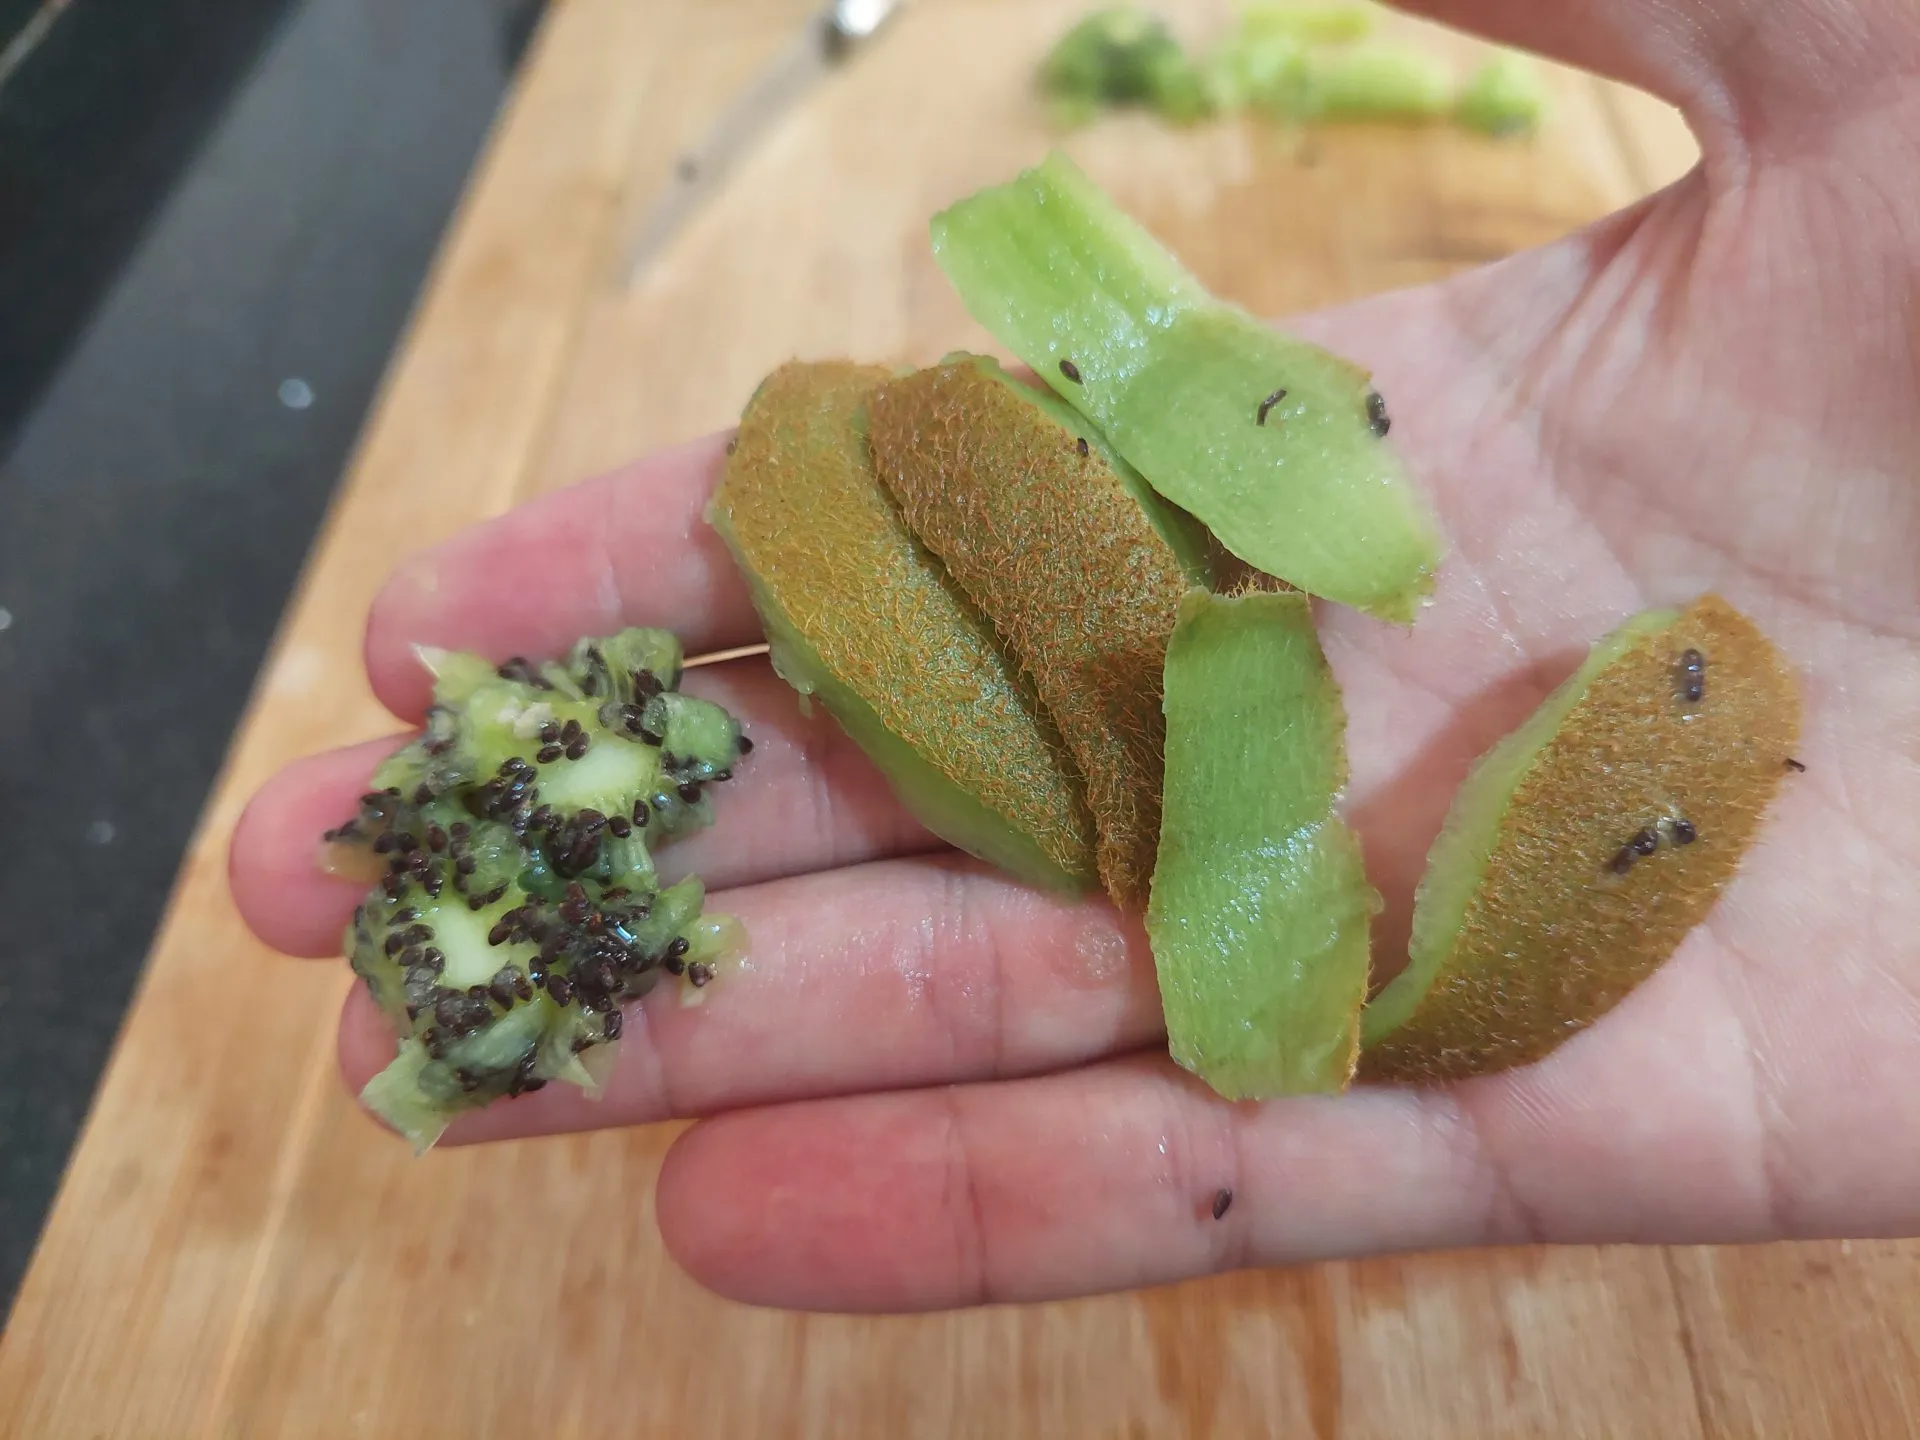 kiwi seeds and kiwi skin on a man's hand